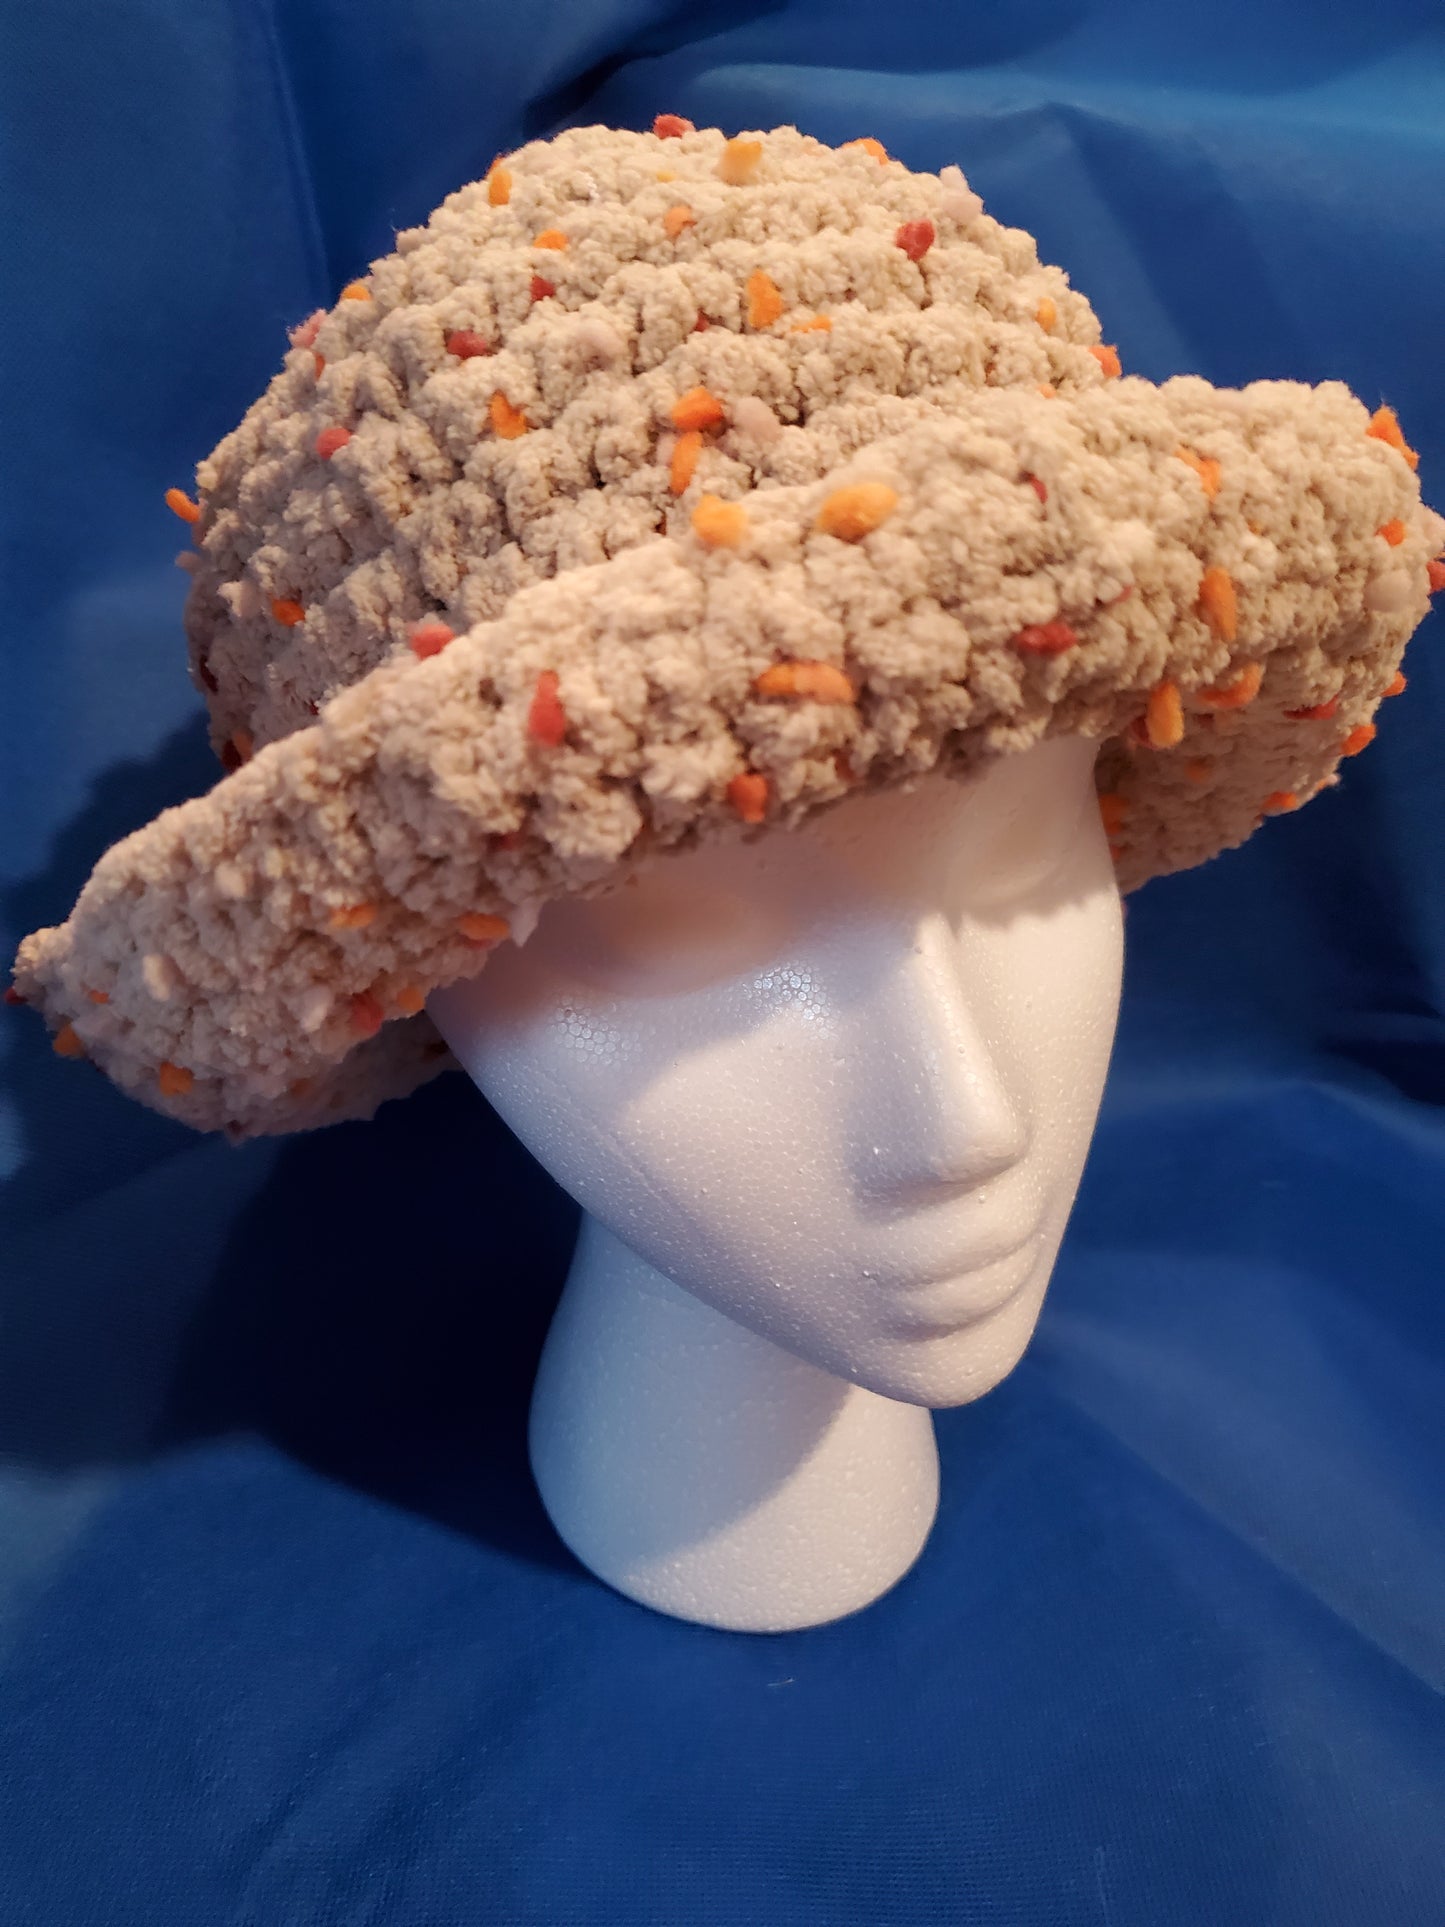 Bucket hat - Beige Confetti / crocheted